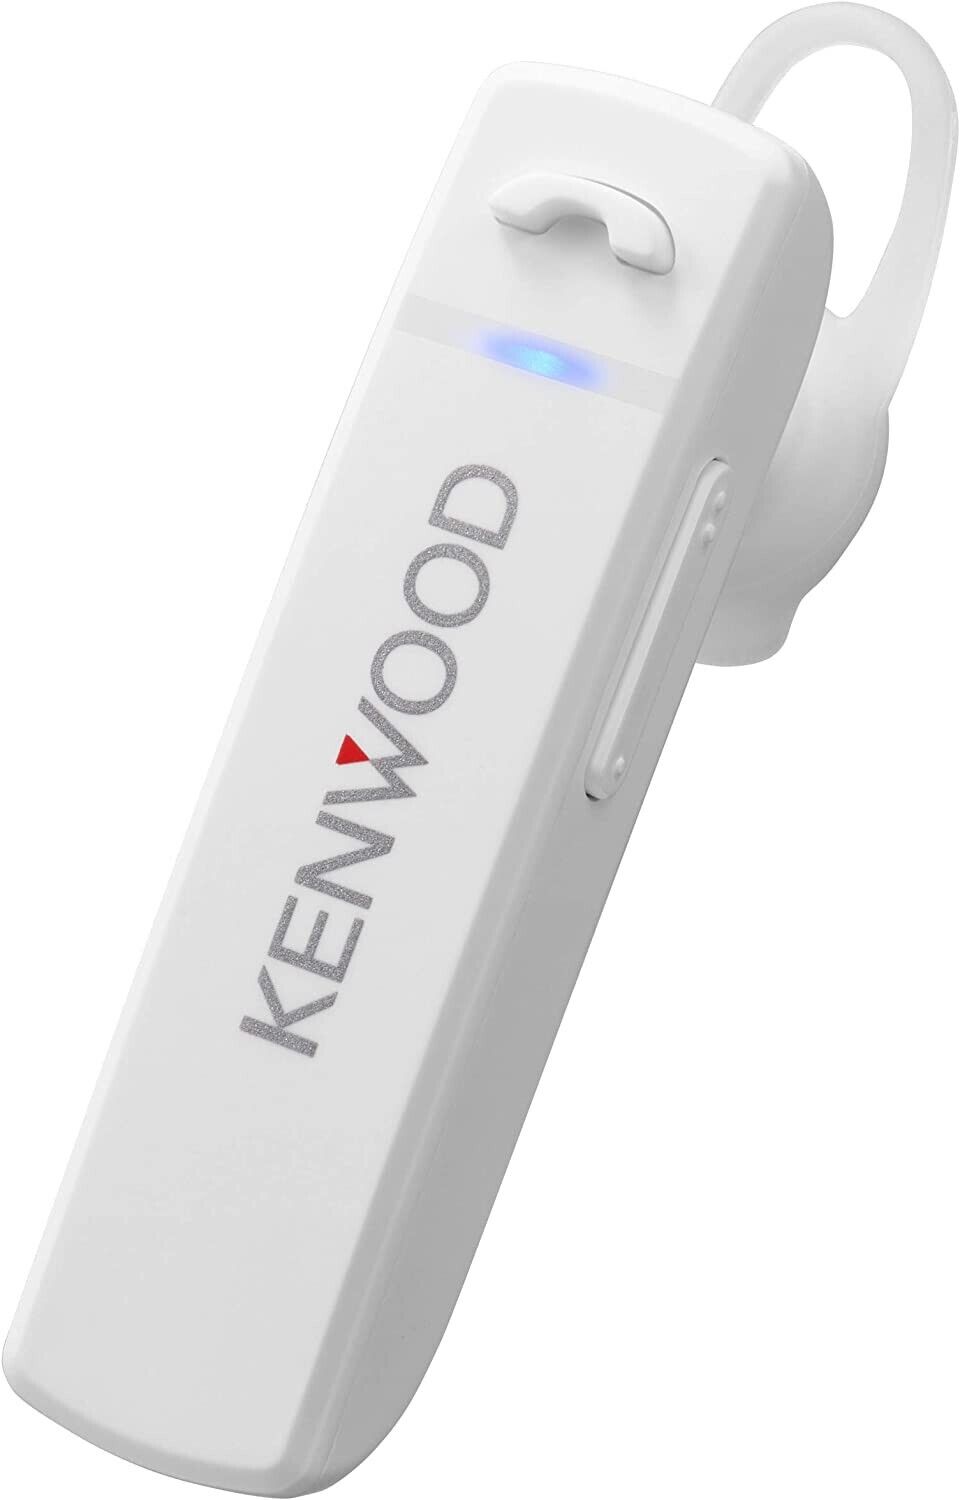 KH-M300 KENWOOD One Ear Headset Earphone Bluetooth White New